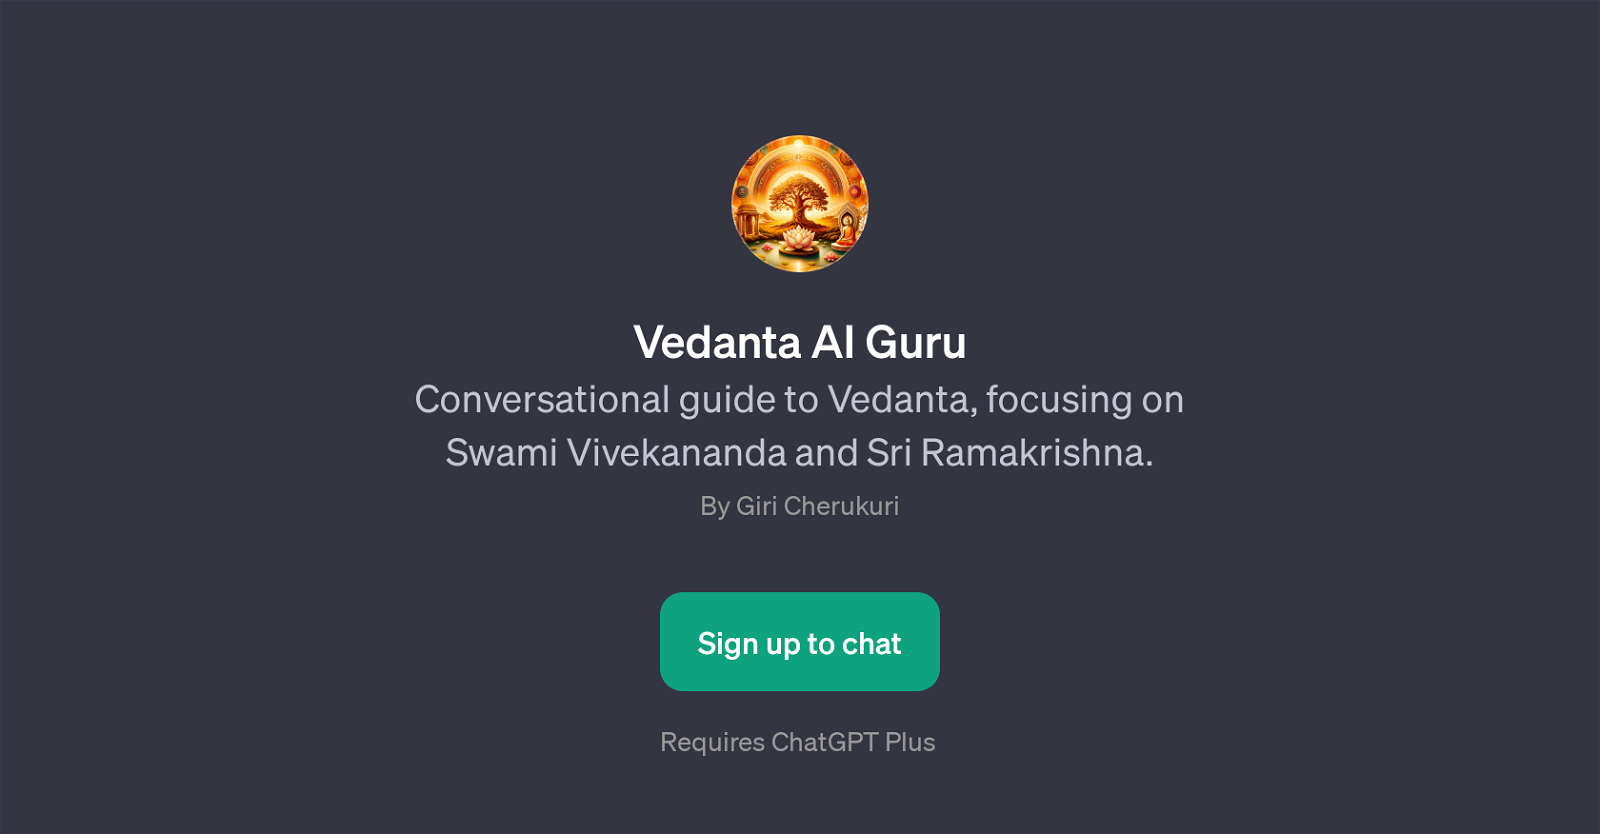 Vedanta AI Guru website